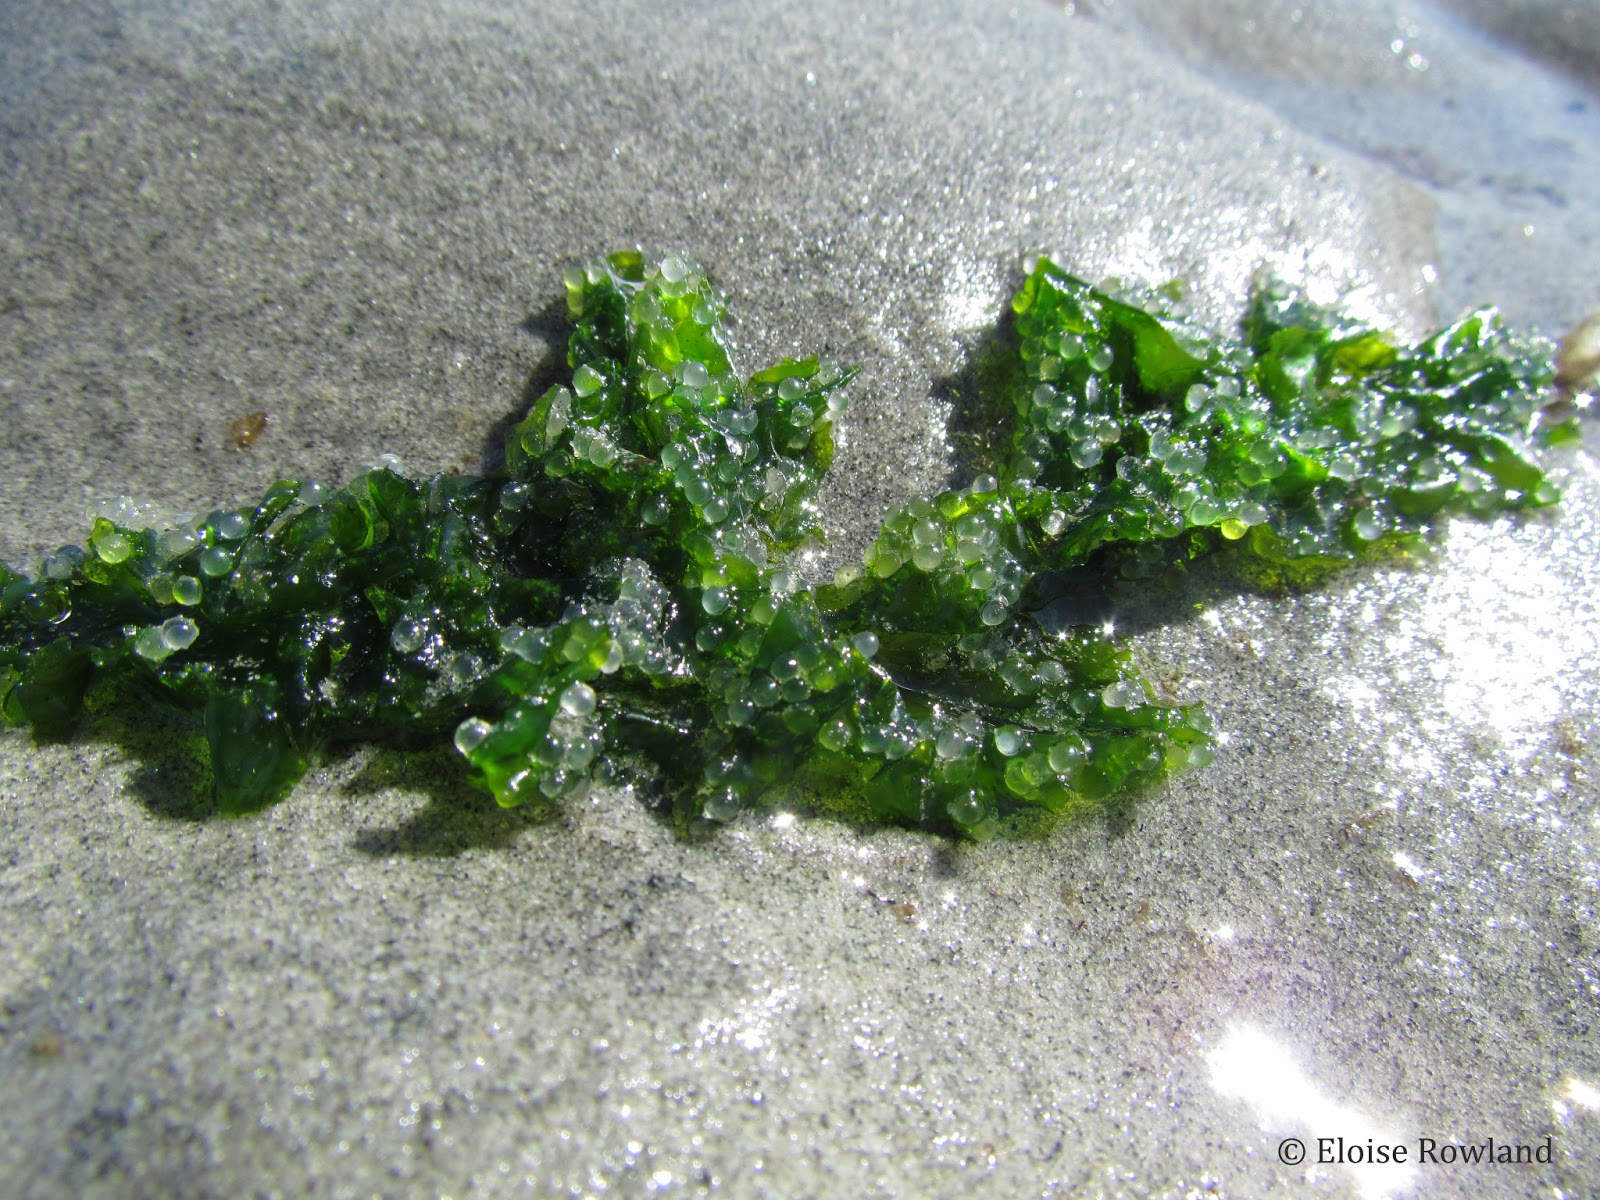 Herring roe on seaweed